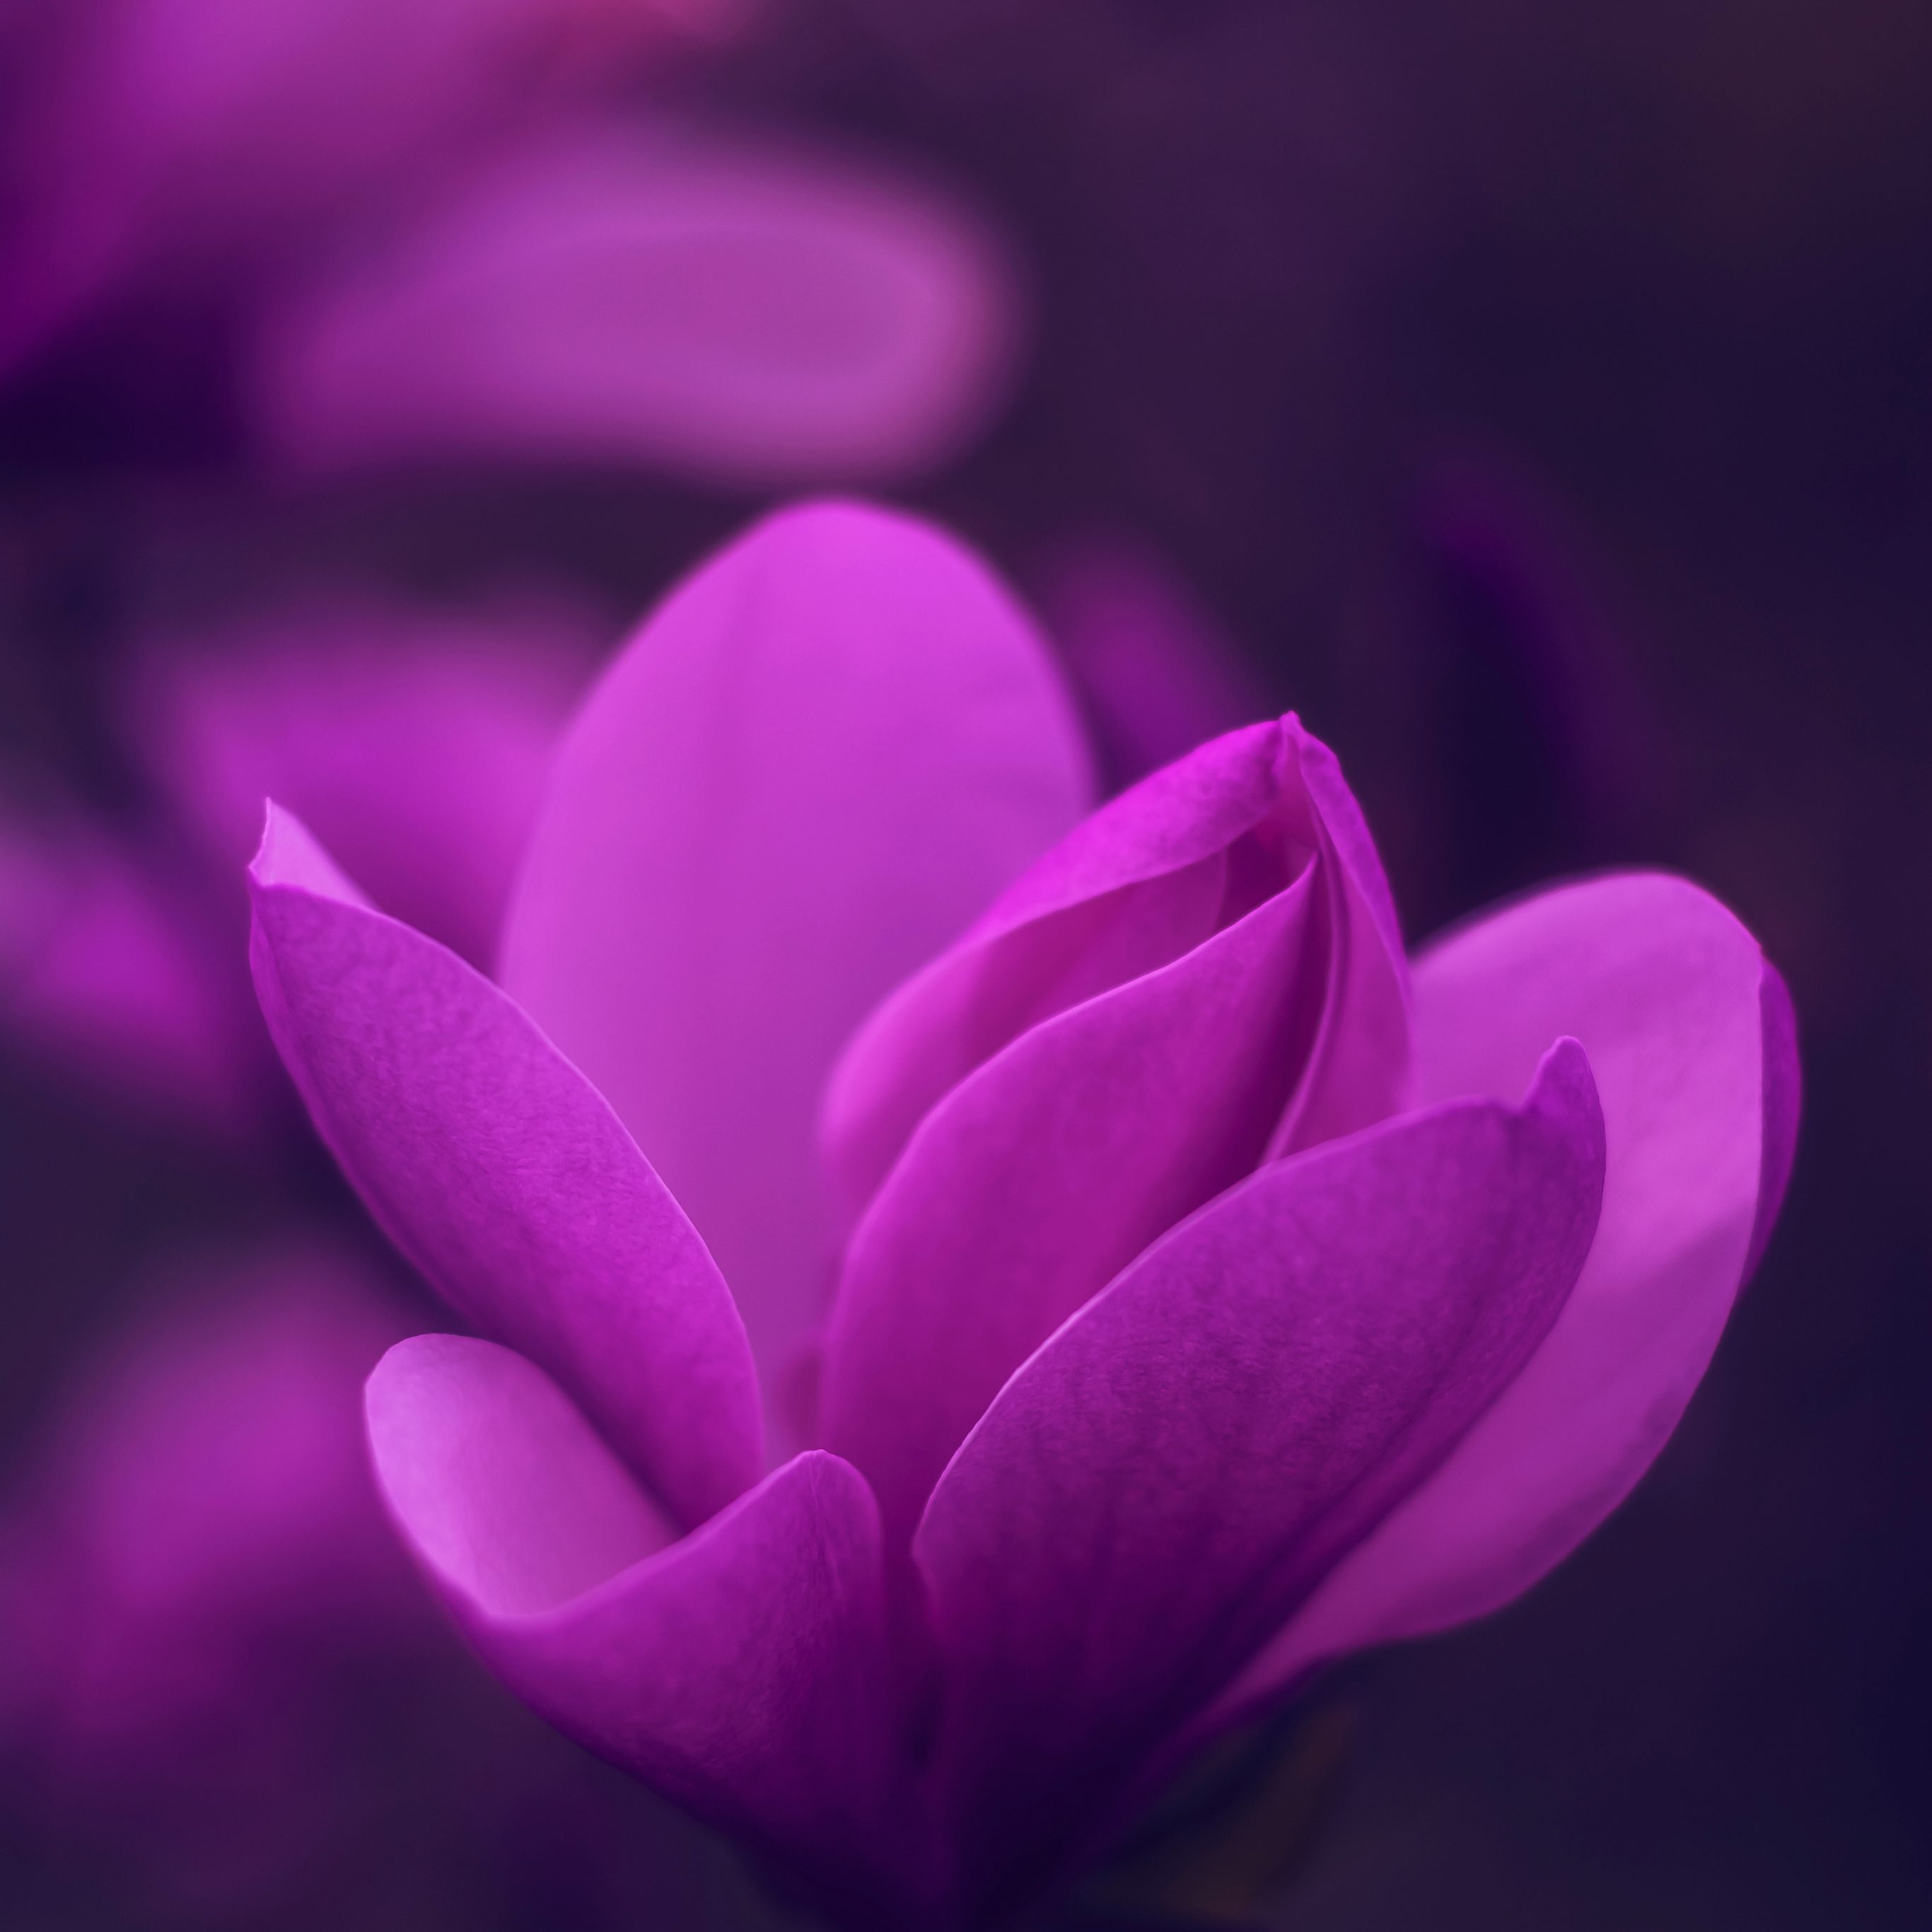 2732x2732 wallpapers 4k iPad Pro Purple Bloom Blossom Petaled Flower iPad Wallpaper 2732x2732 pixels resolution